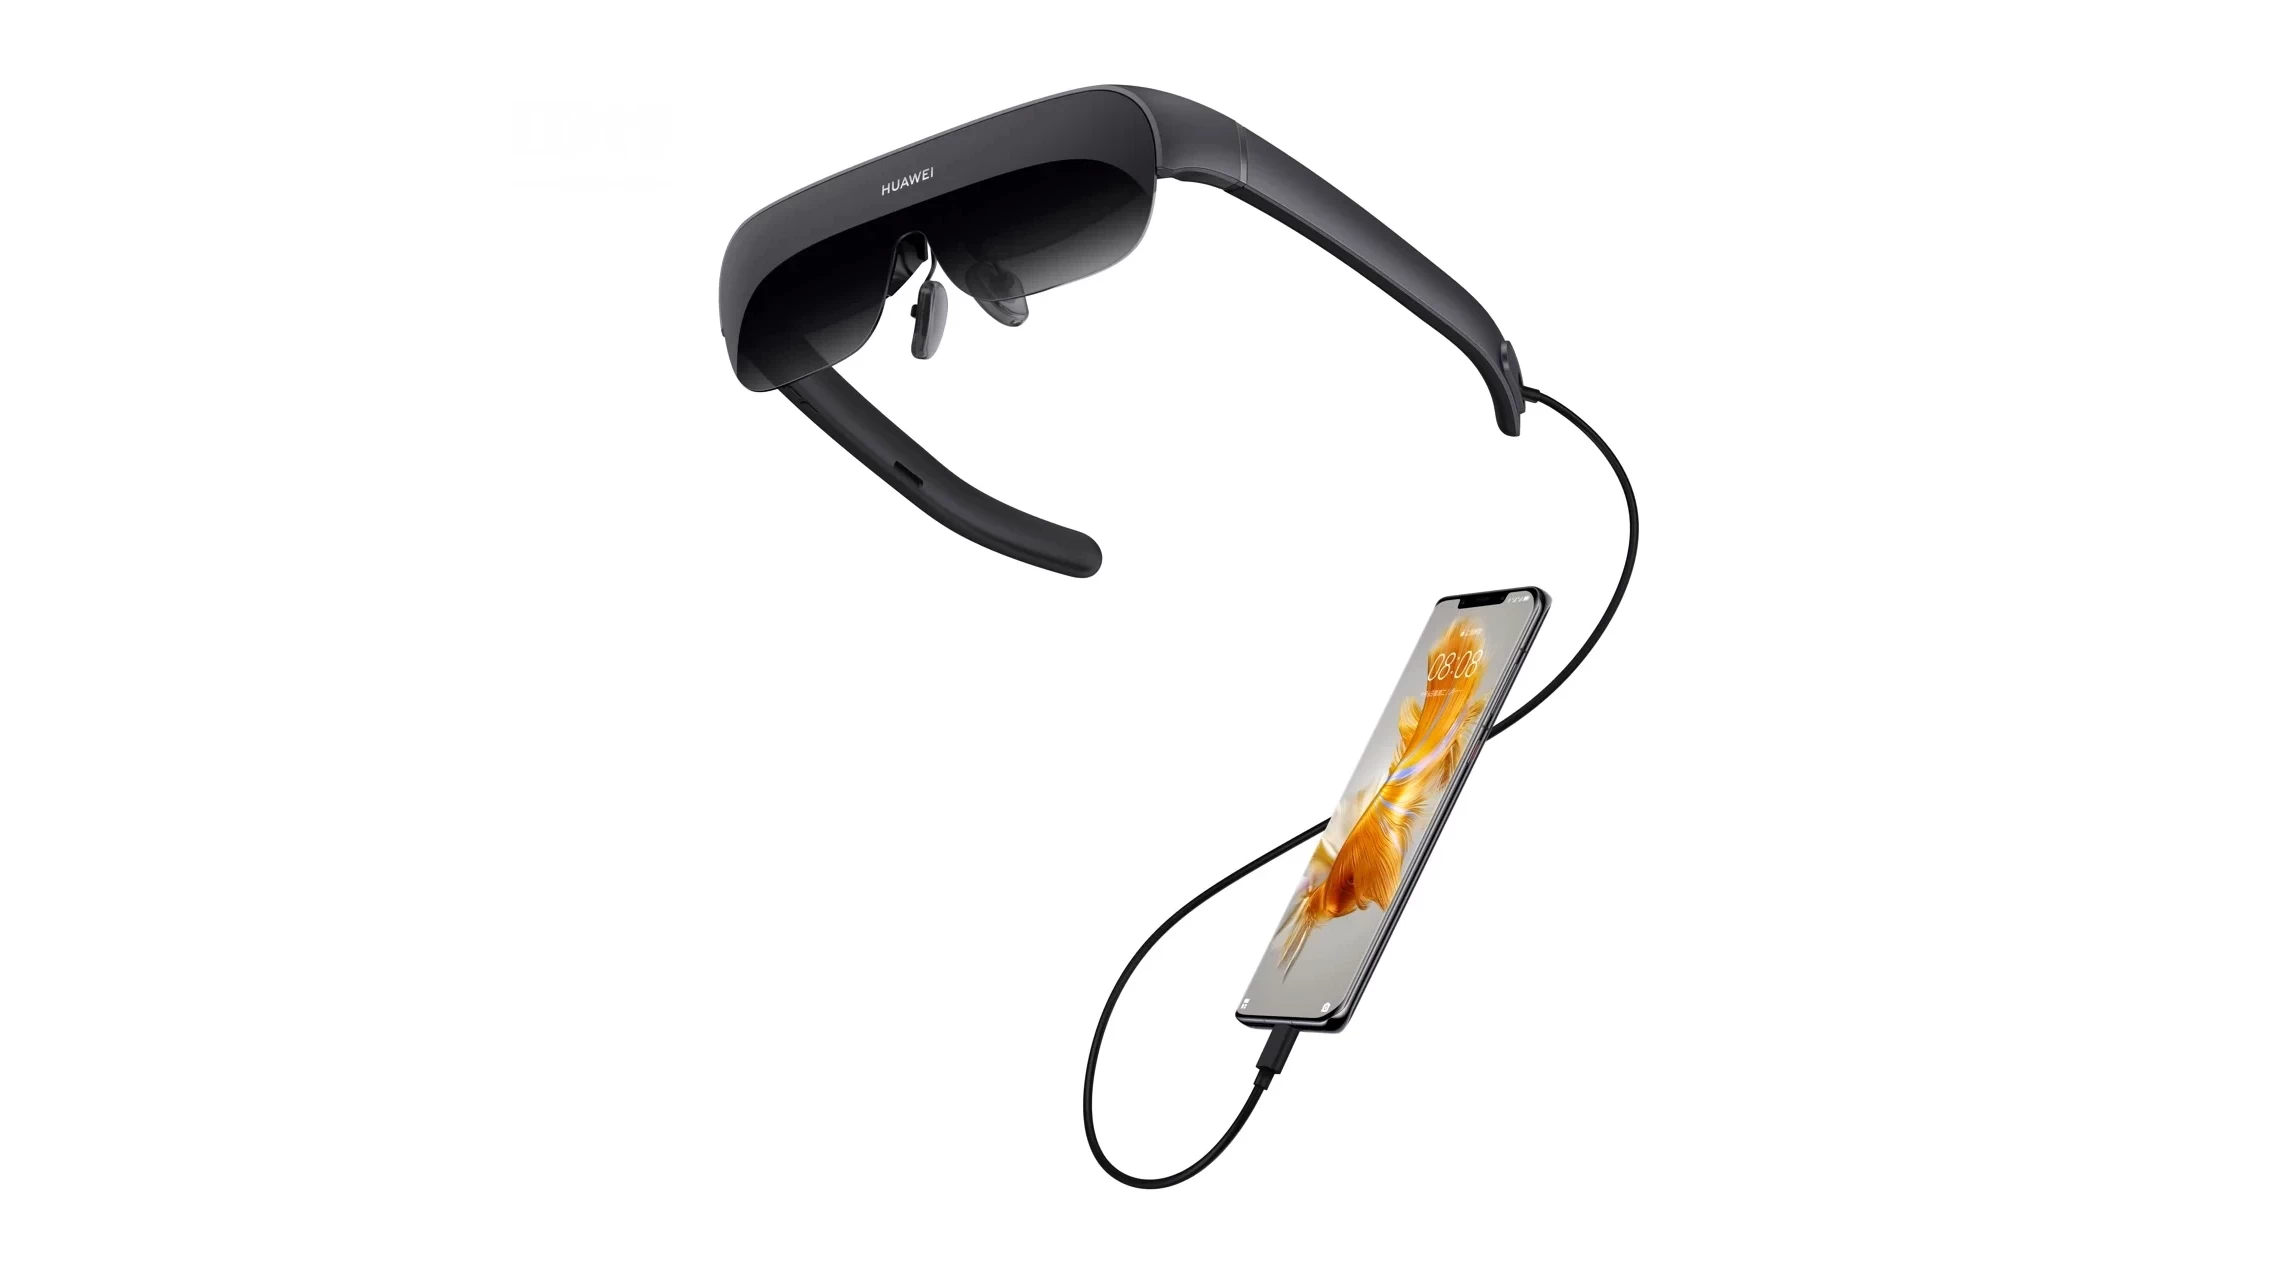 Huawei анонсировали свои новые умные очки для просмотра фильмов Huawei Vision Glass c микродисплями разрешением 1920x1080 и яркостью 480 нит.